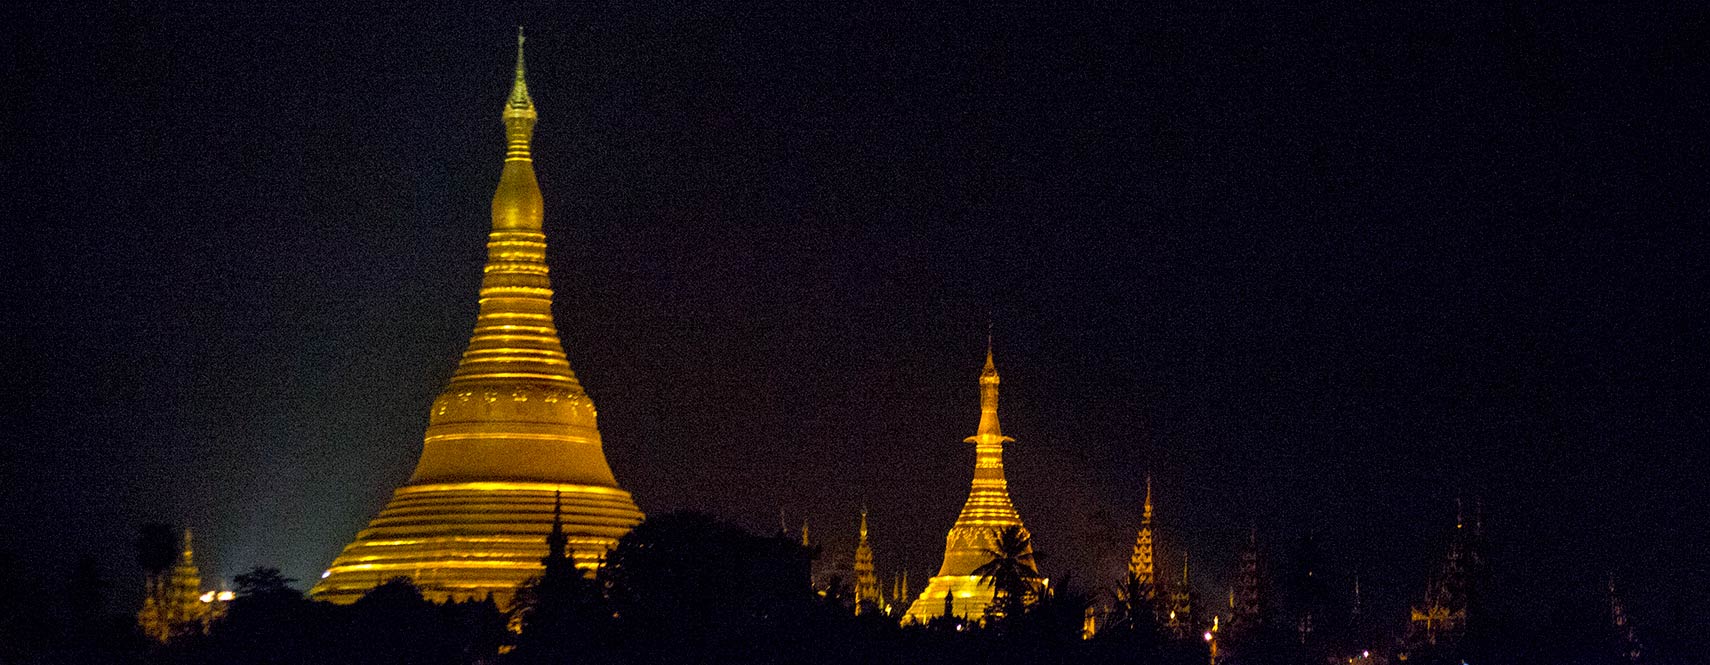 Shwedagon pagoda, Yangon at night